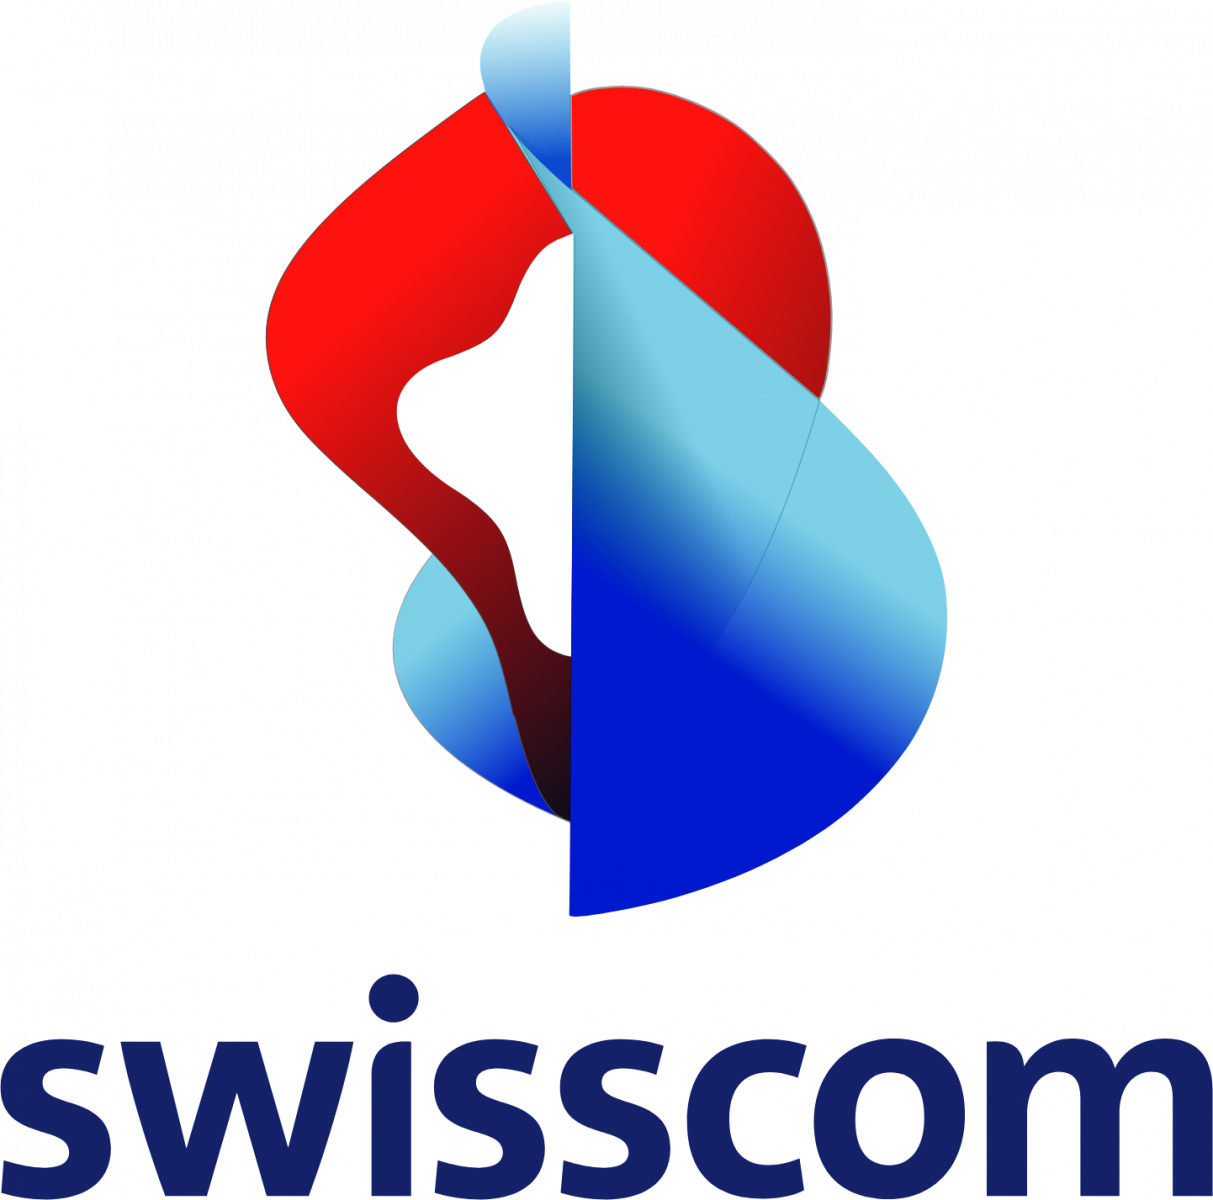 Swisscom it companies in Switzerland